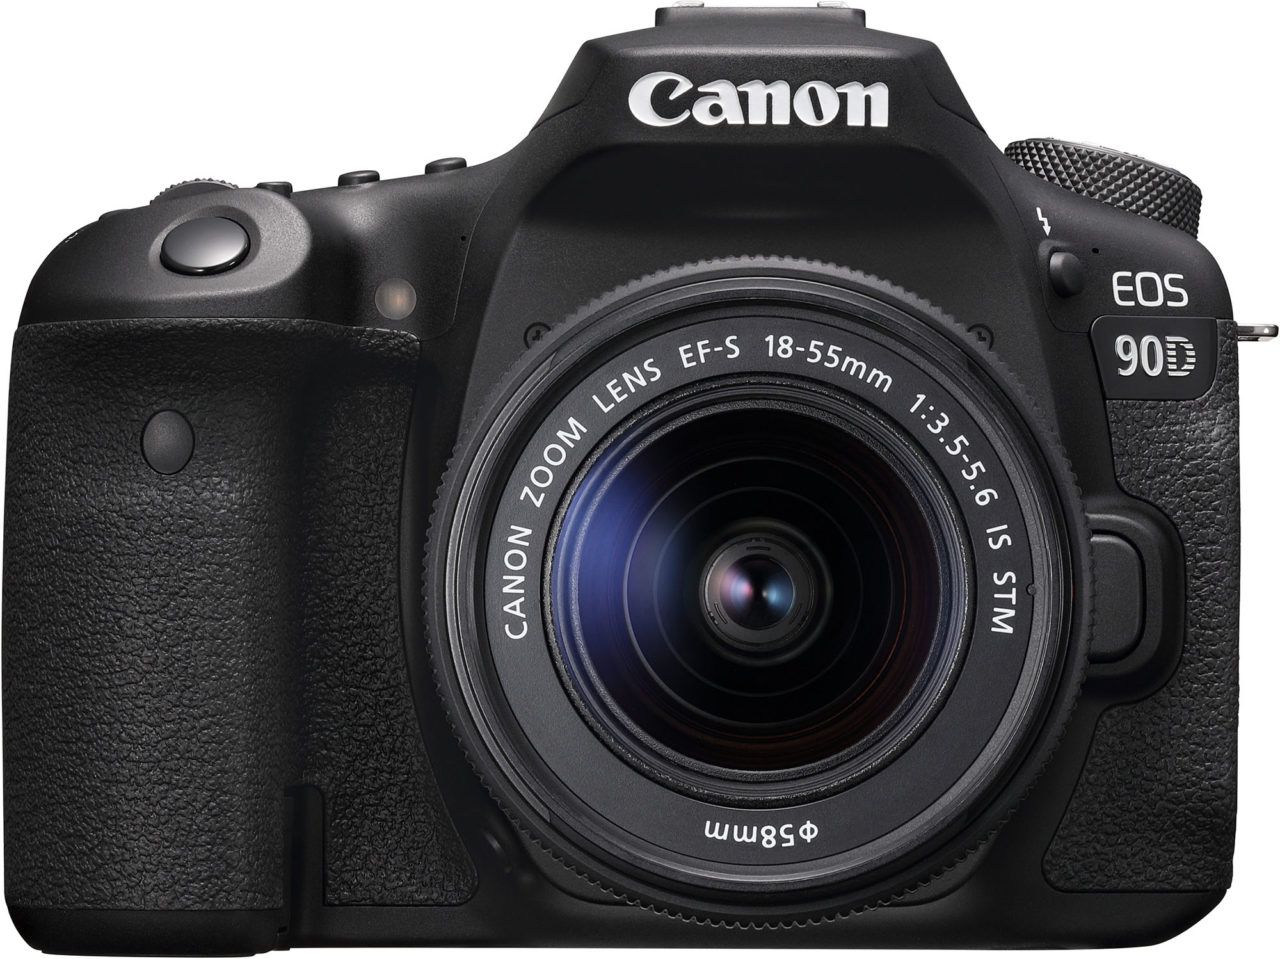 Canon EOS 90D New Features vs 80D & Expert Reviews - TechTrot